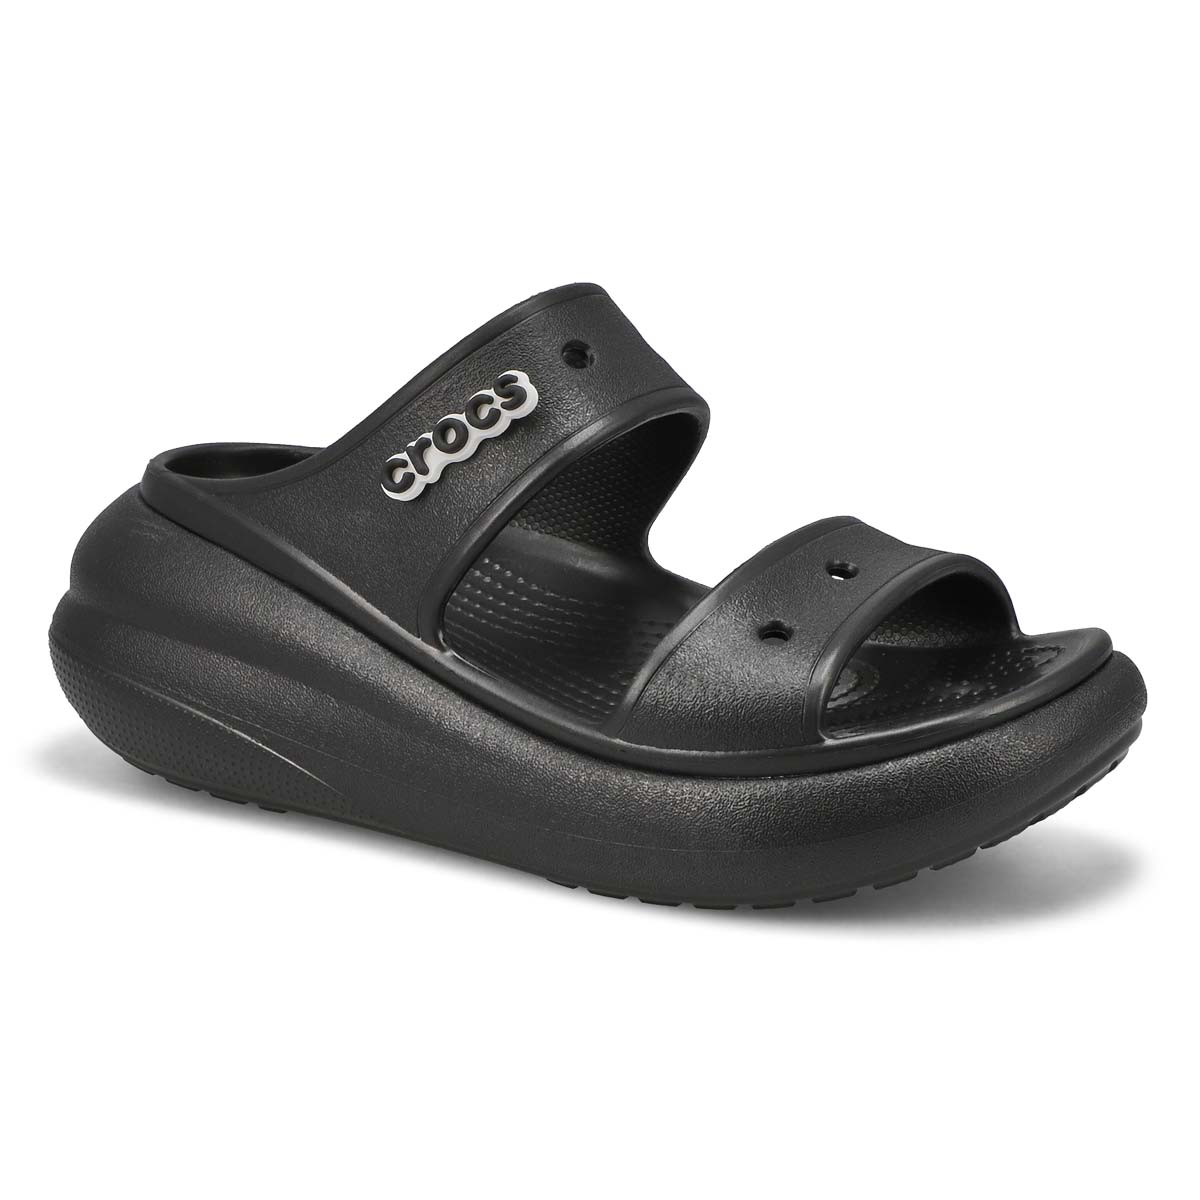 Crocs Women's Classic Crush Platform Sandal - | SoftMoc.com